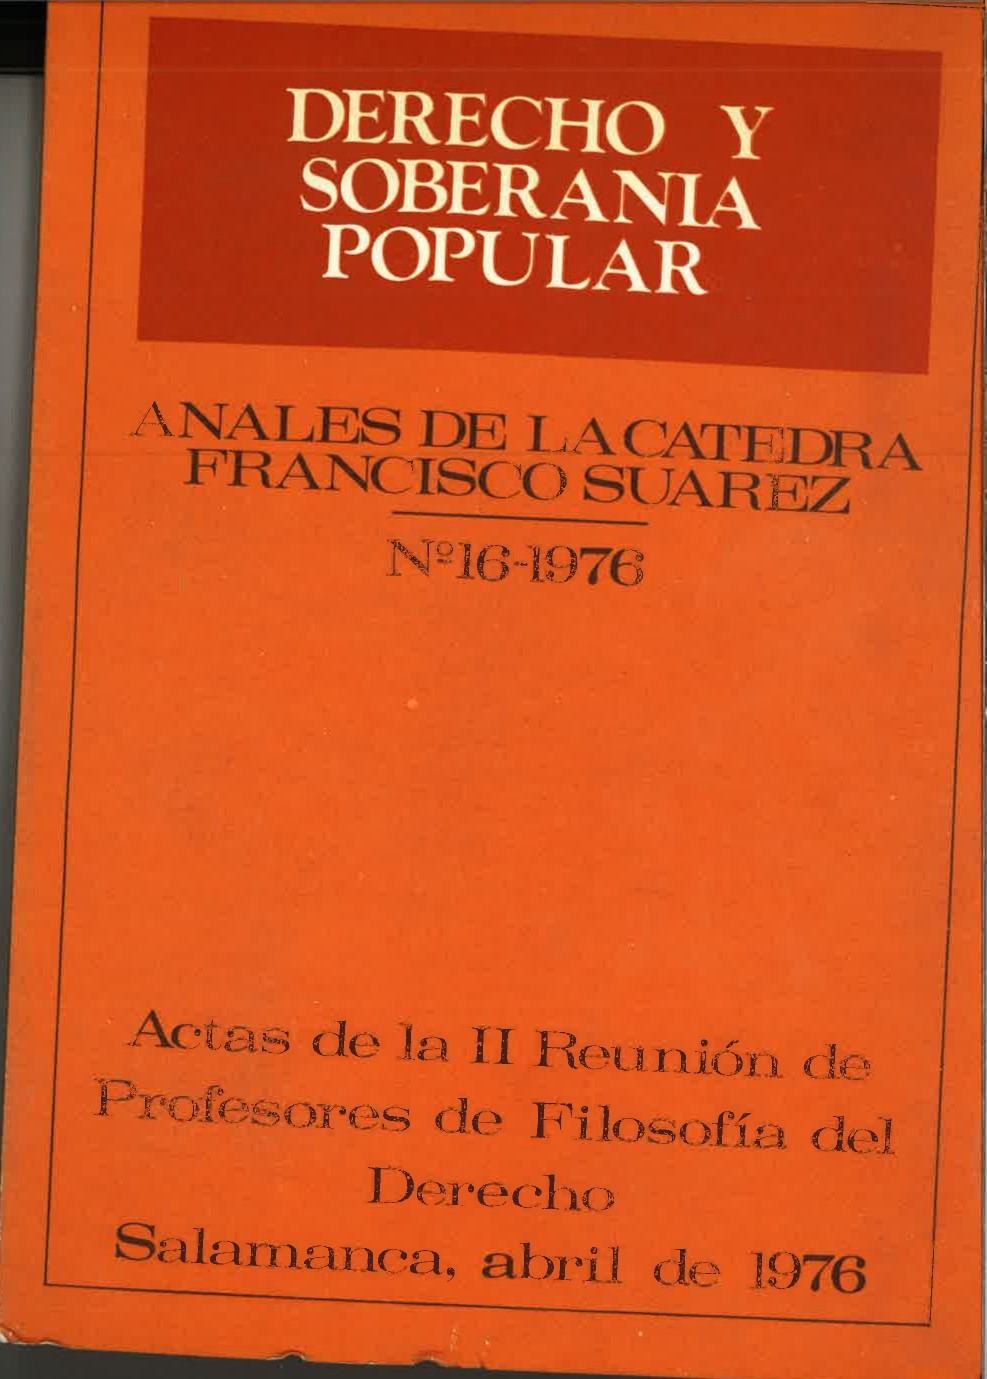 					Ver Vol. 16 (1976): Derecho y soberanía popular
				